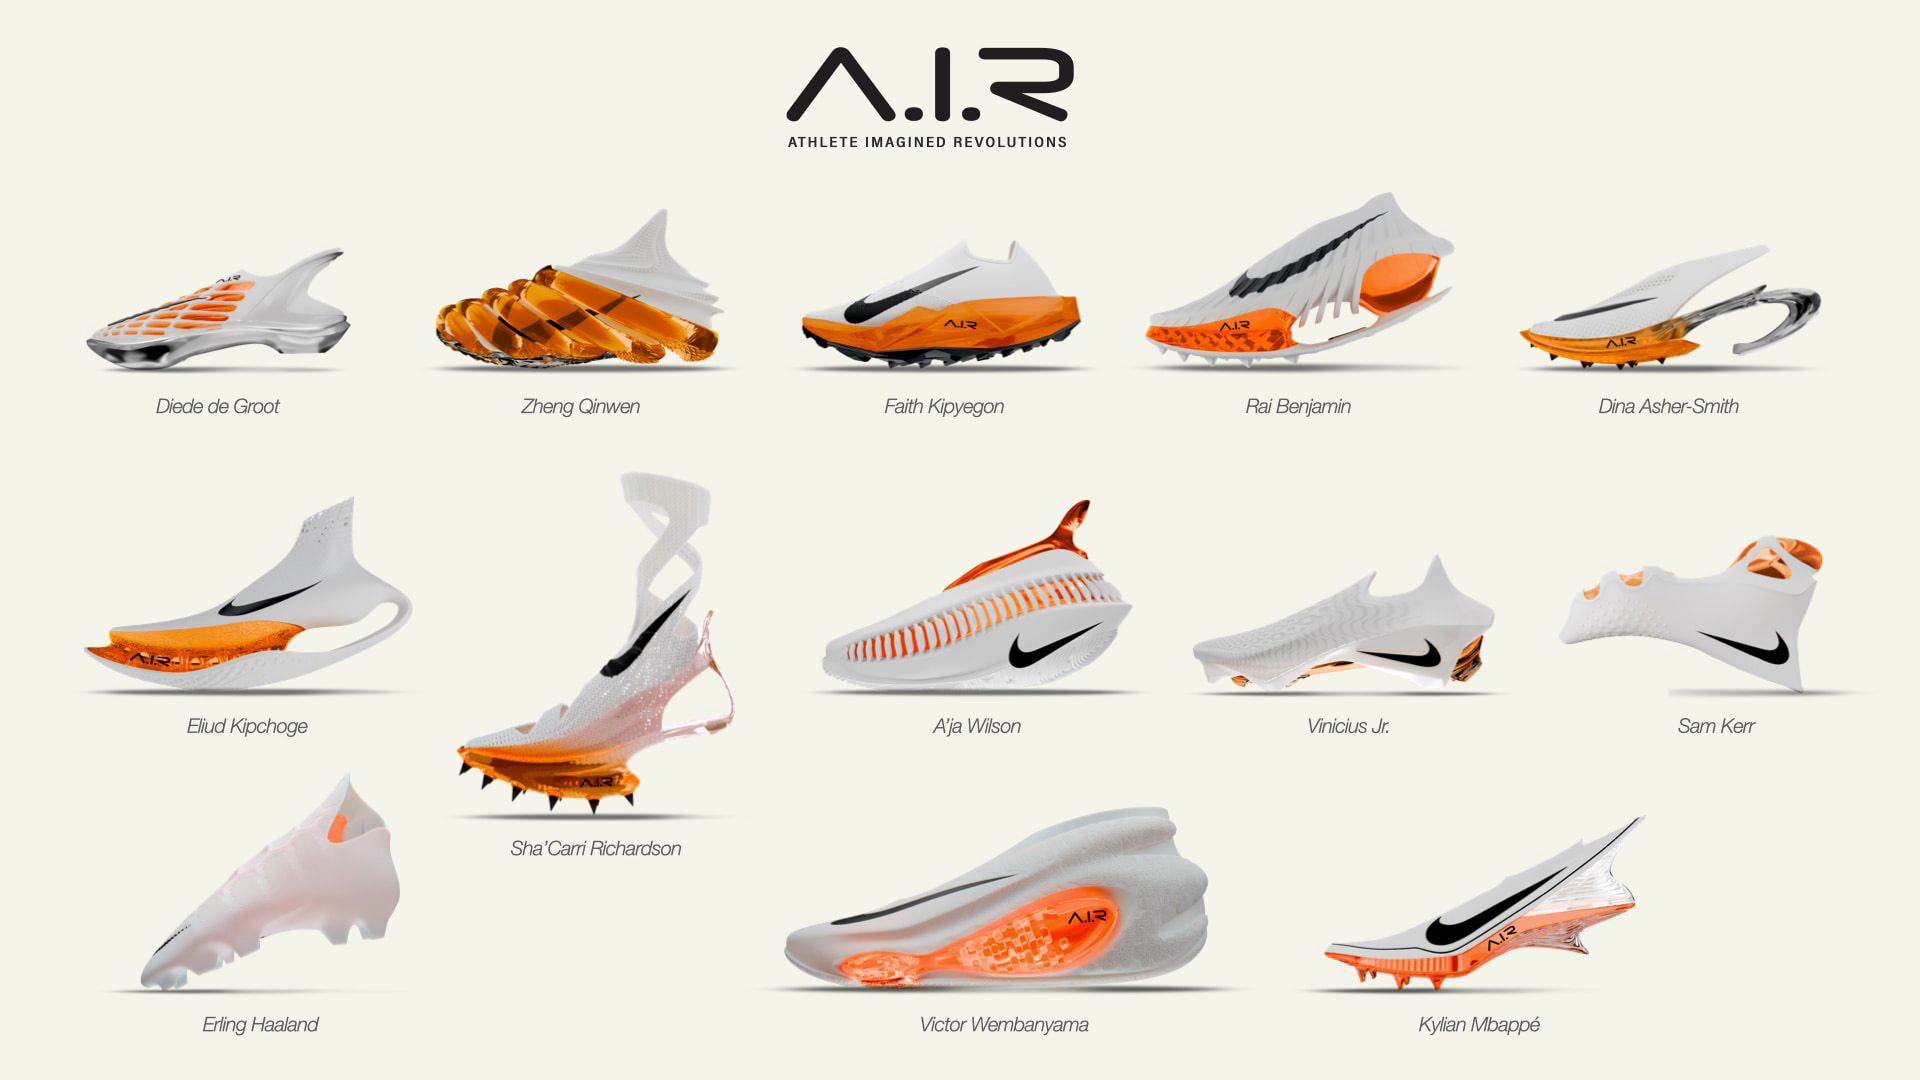 NIKEが13人のトップアスリートと夢のプロダクトを構想する「A.I.R.」プロジェクトを発表。キプチョゲが描いたモデルも